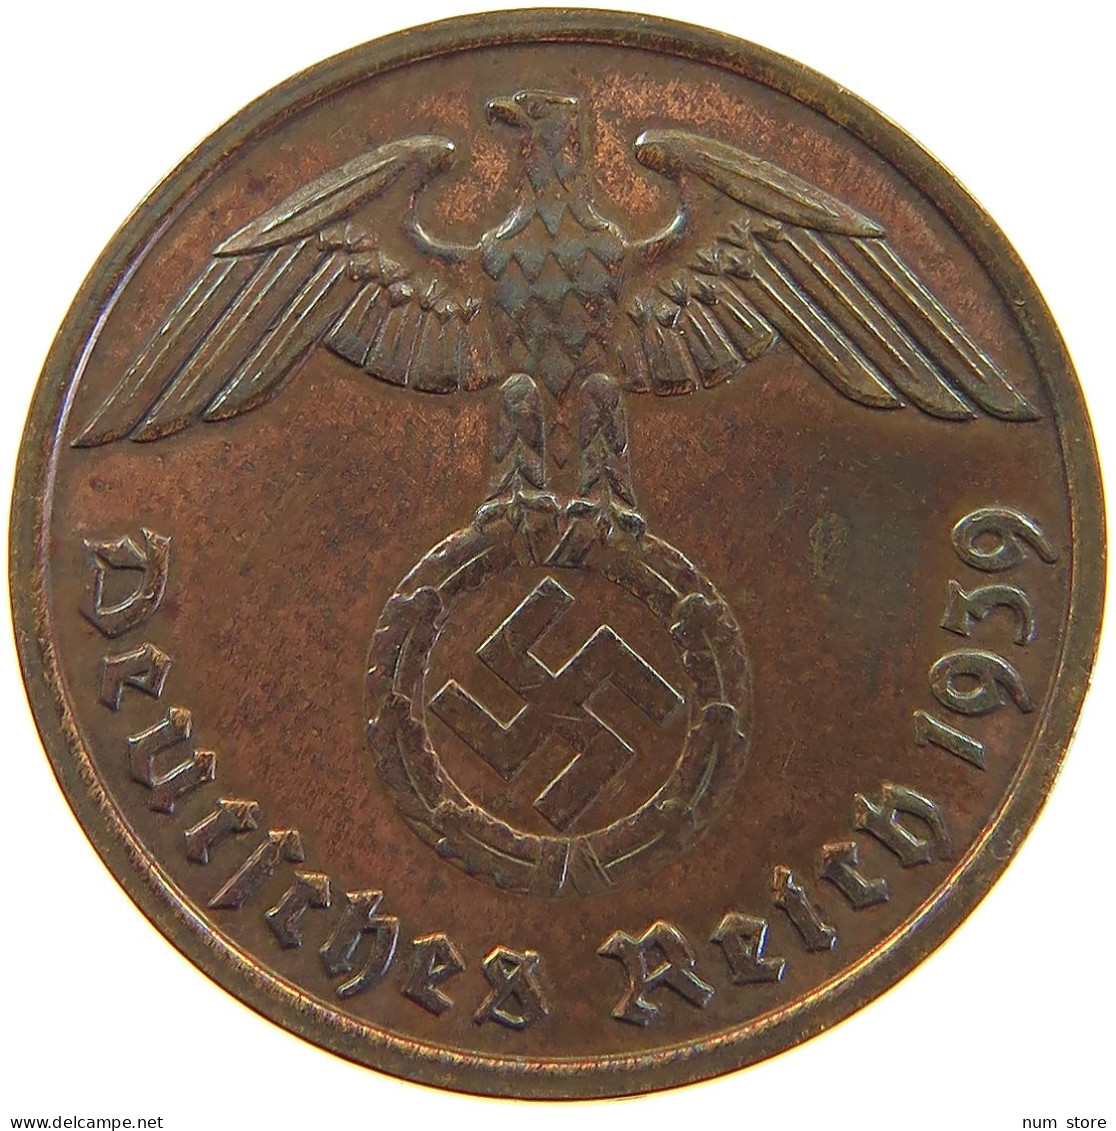 GERMANY 2 PFENNIG 1939 G #a066 0659 - 2 Reichspfennig